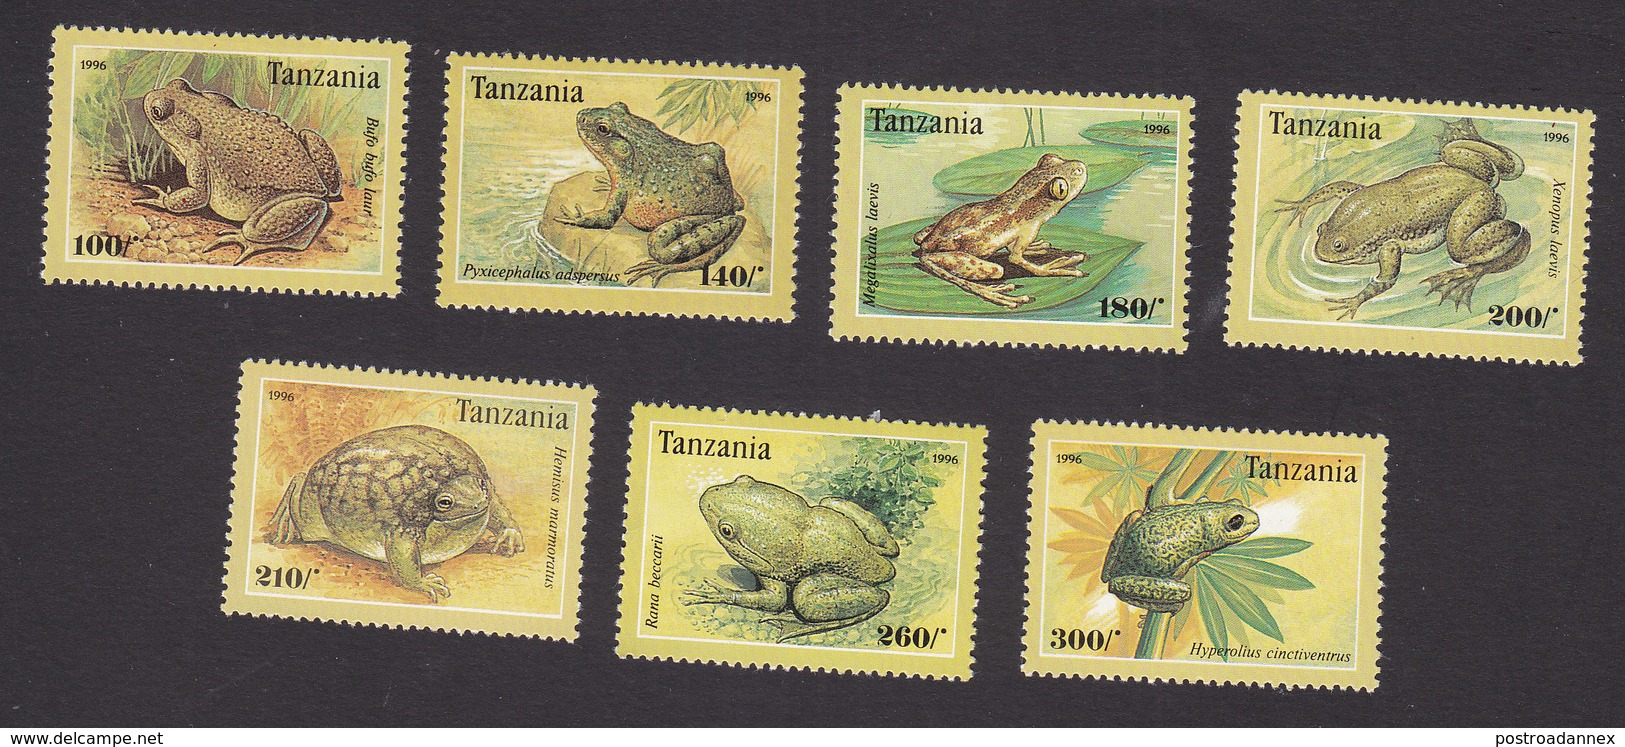 Tanzania, Scott #1453-1459, Mint Hinged, Frogs, Issued 1996 - Tanzania (1964-...)